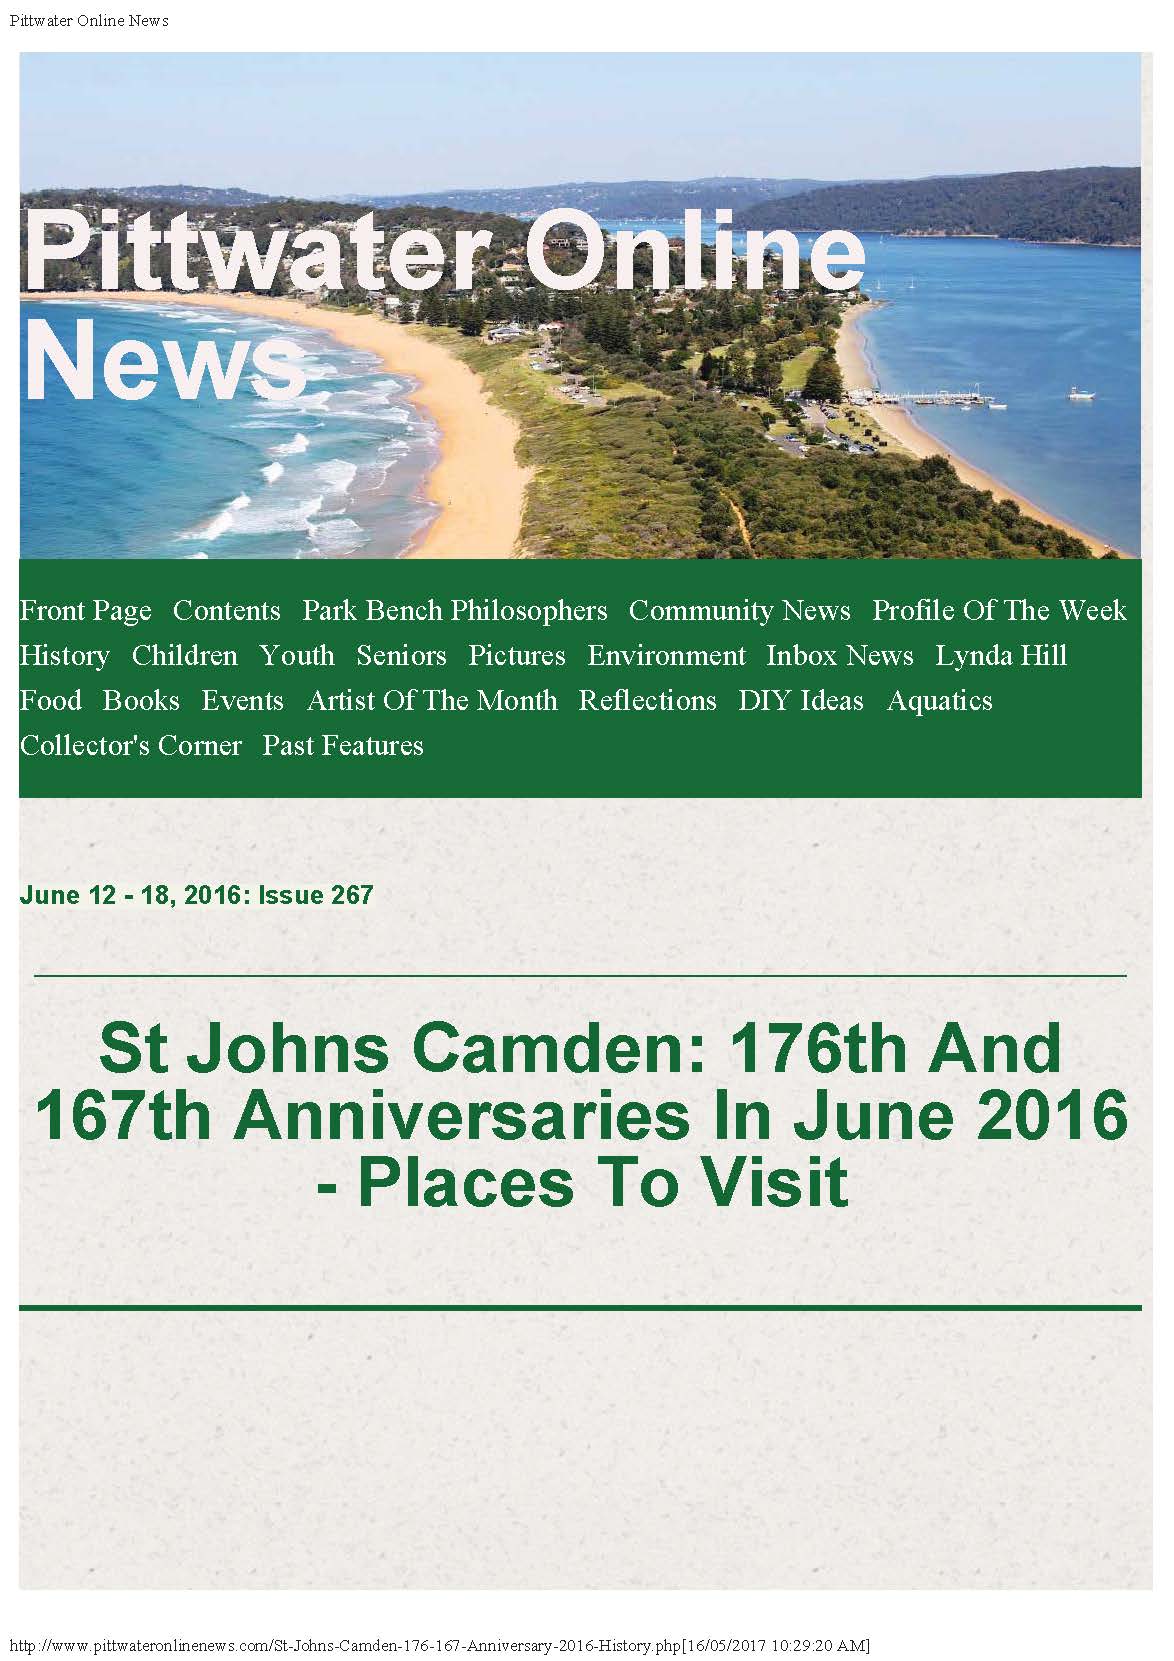 St John's Camden - Anniversaries - June 2016